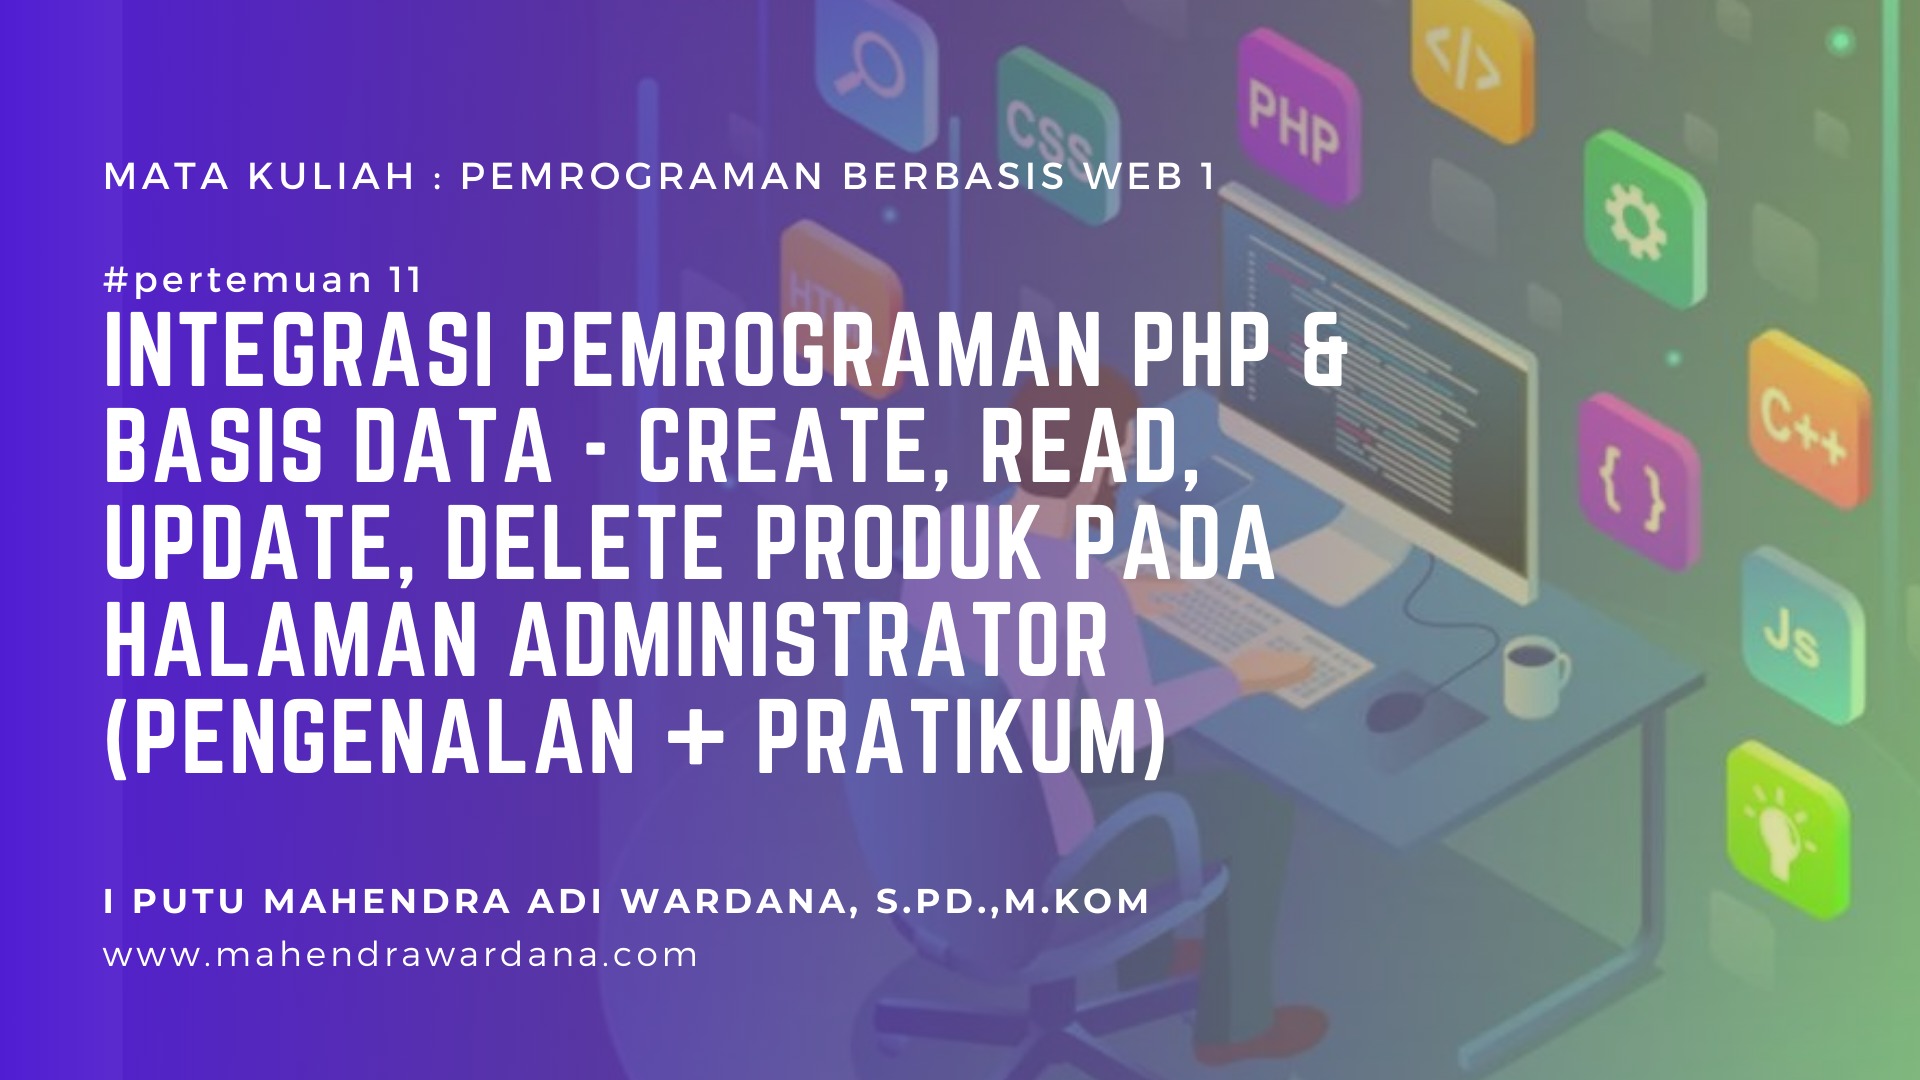 Pertemuan 11 - Integrasi Pemrograman PHP & Basis Data - Create, Read, Update, Delete Produk pada Halaman Administrator (Pengenalan + Pratikum)